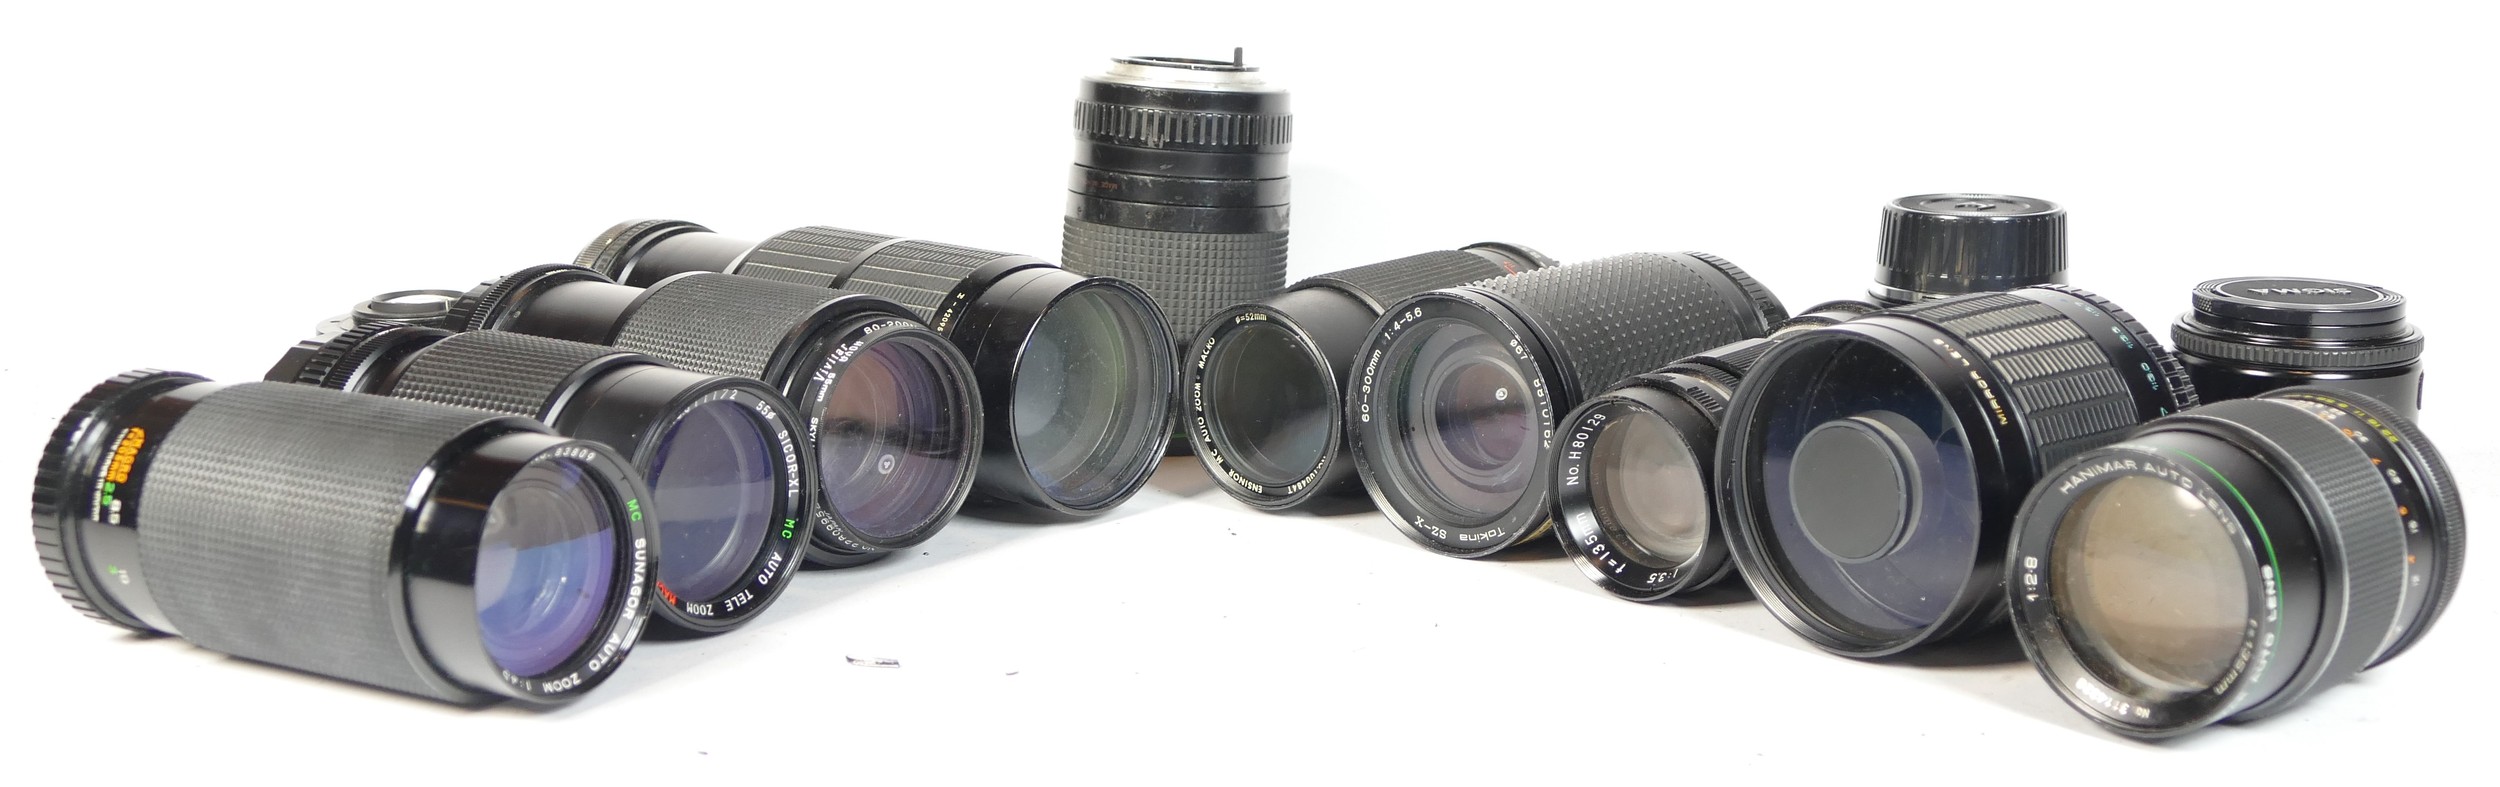 Four SLR vintage film cameras to include a Minolta 7000, a Praktica LTL, a Praktica TLS and and - Bild 3 aus 3